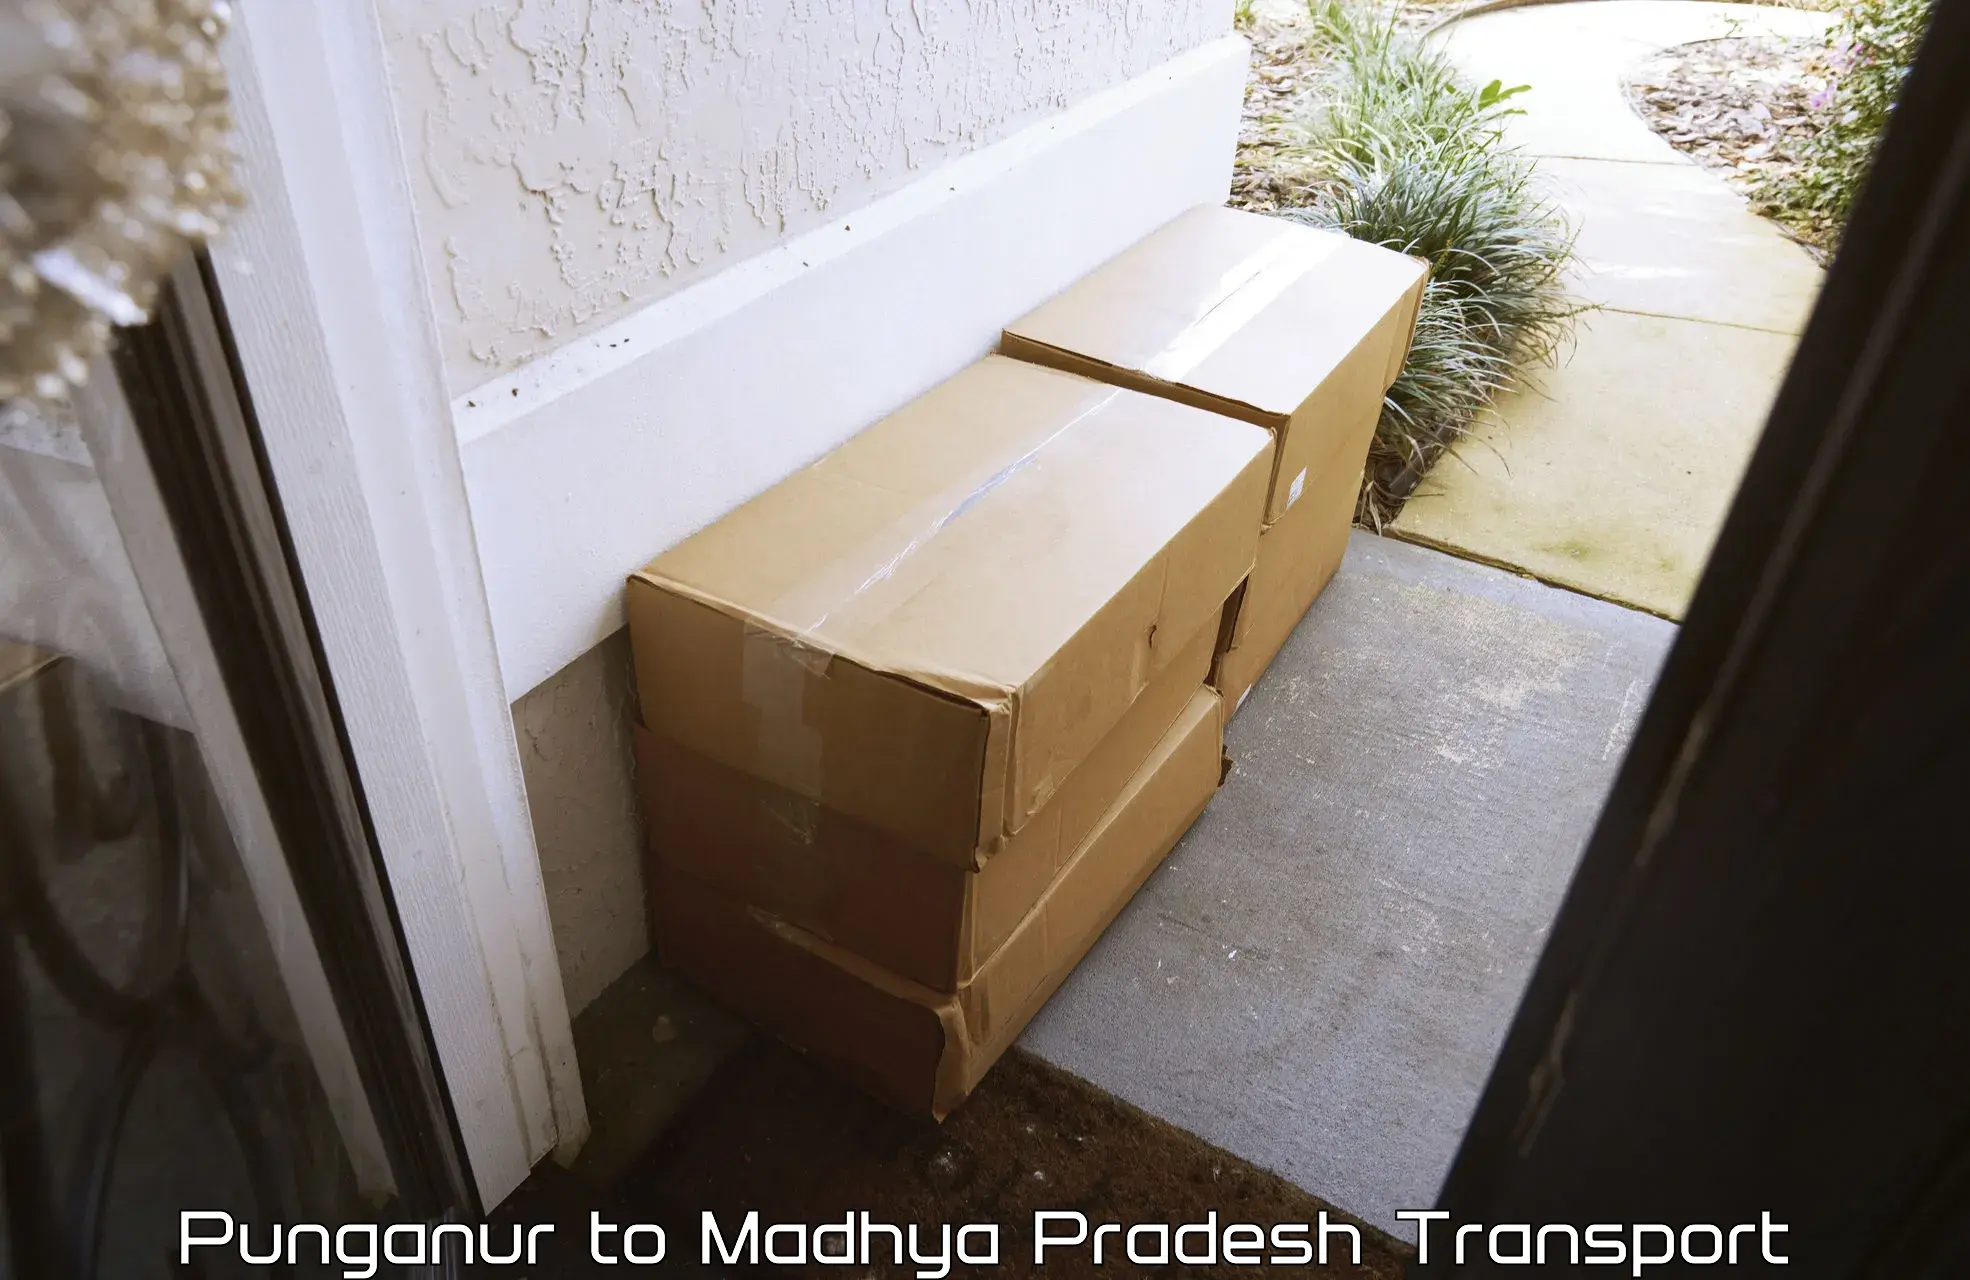 Shipping partner Punganur to Badnagar